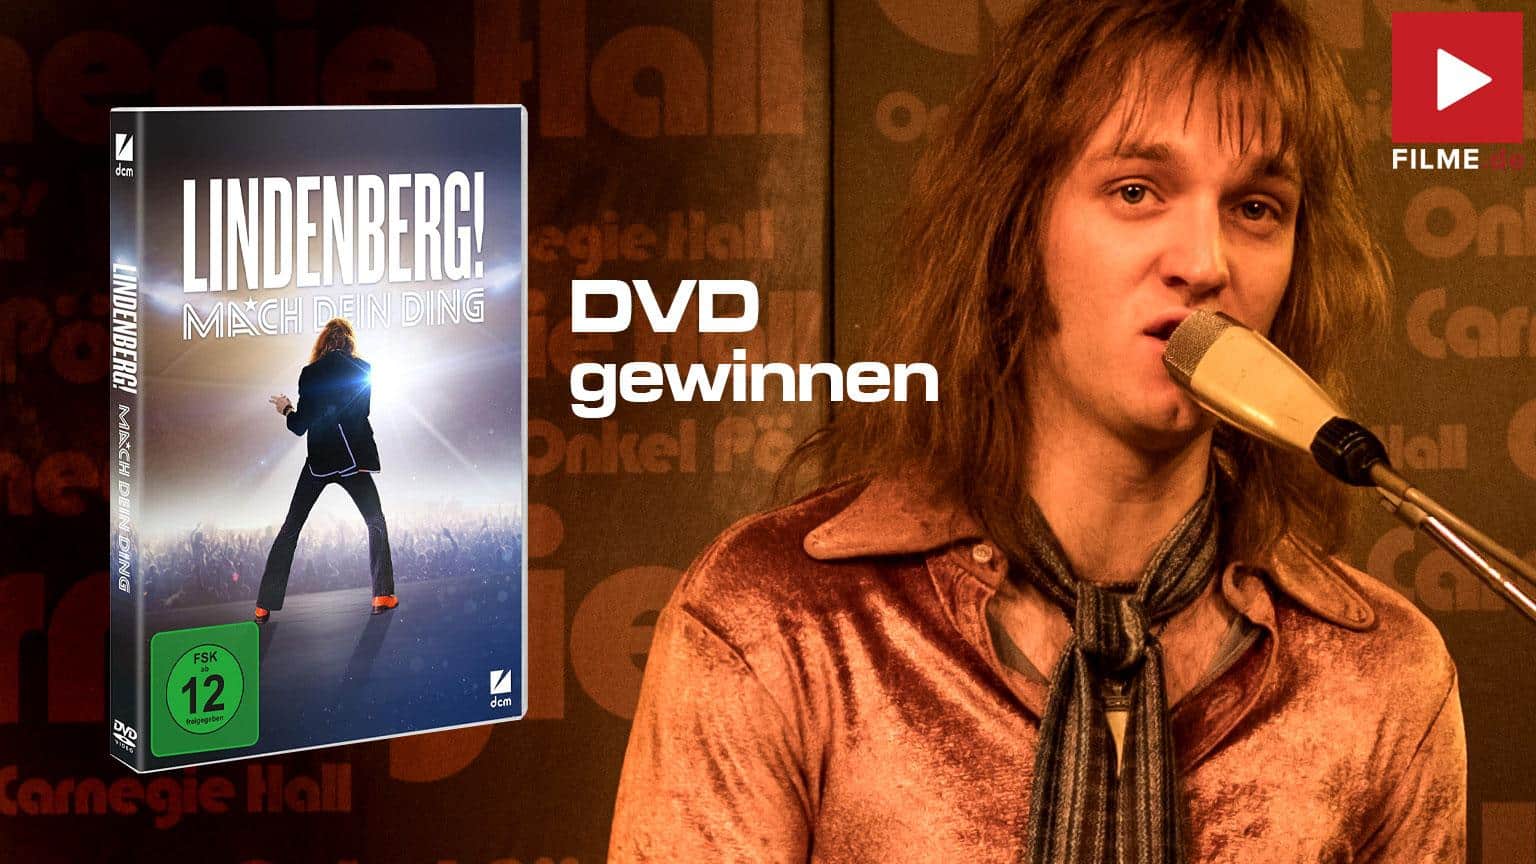 Lindenberg! Mach dein Ding Gewinnspiel gewinnen DVD shop kaufen Mediabook Blu-ray Artikelbild